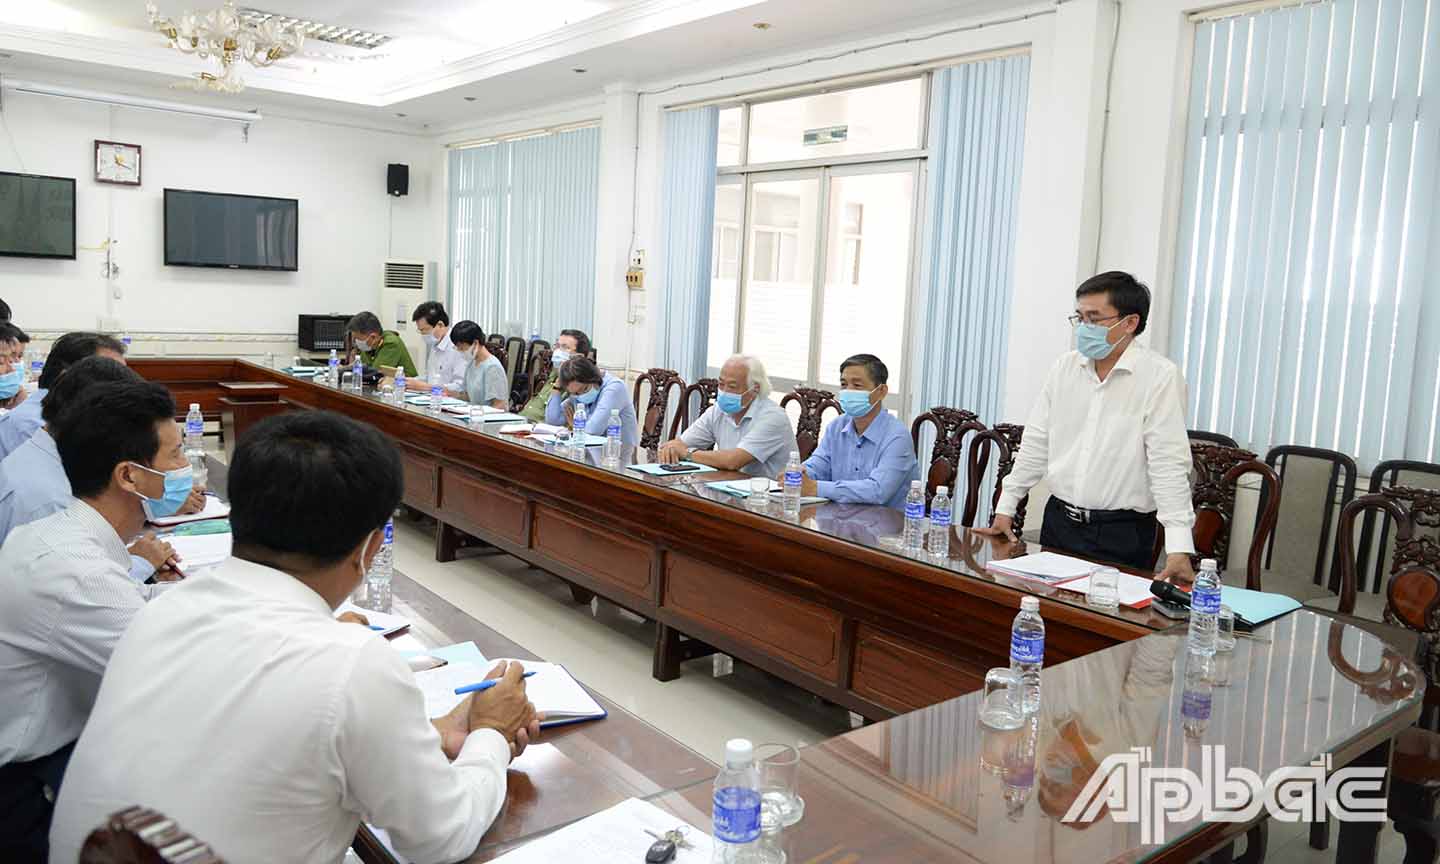 Đồng chí Nguyễn Văn Mười (đứng) phát biểu khi đến làm việc với UBND huyện Cai Lậy.